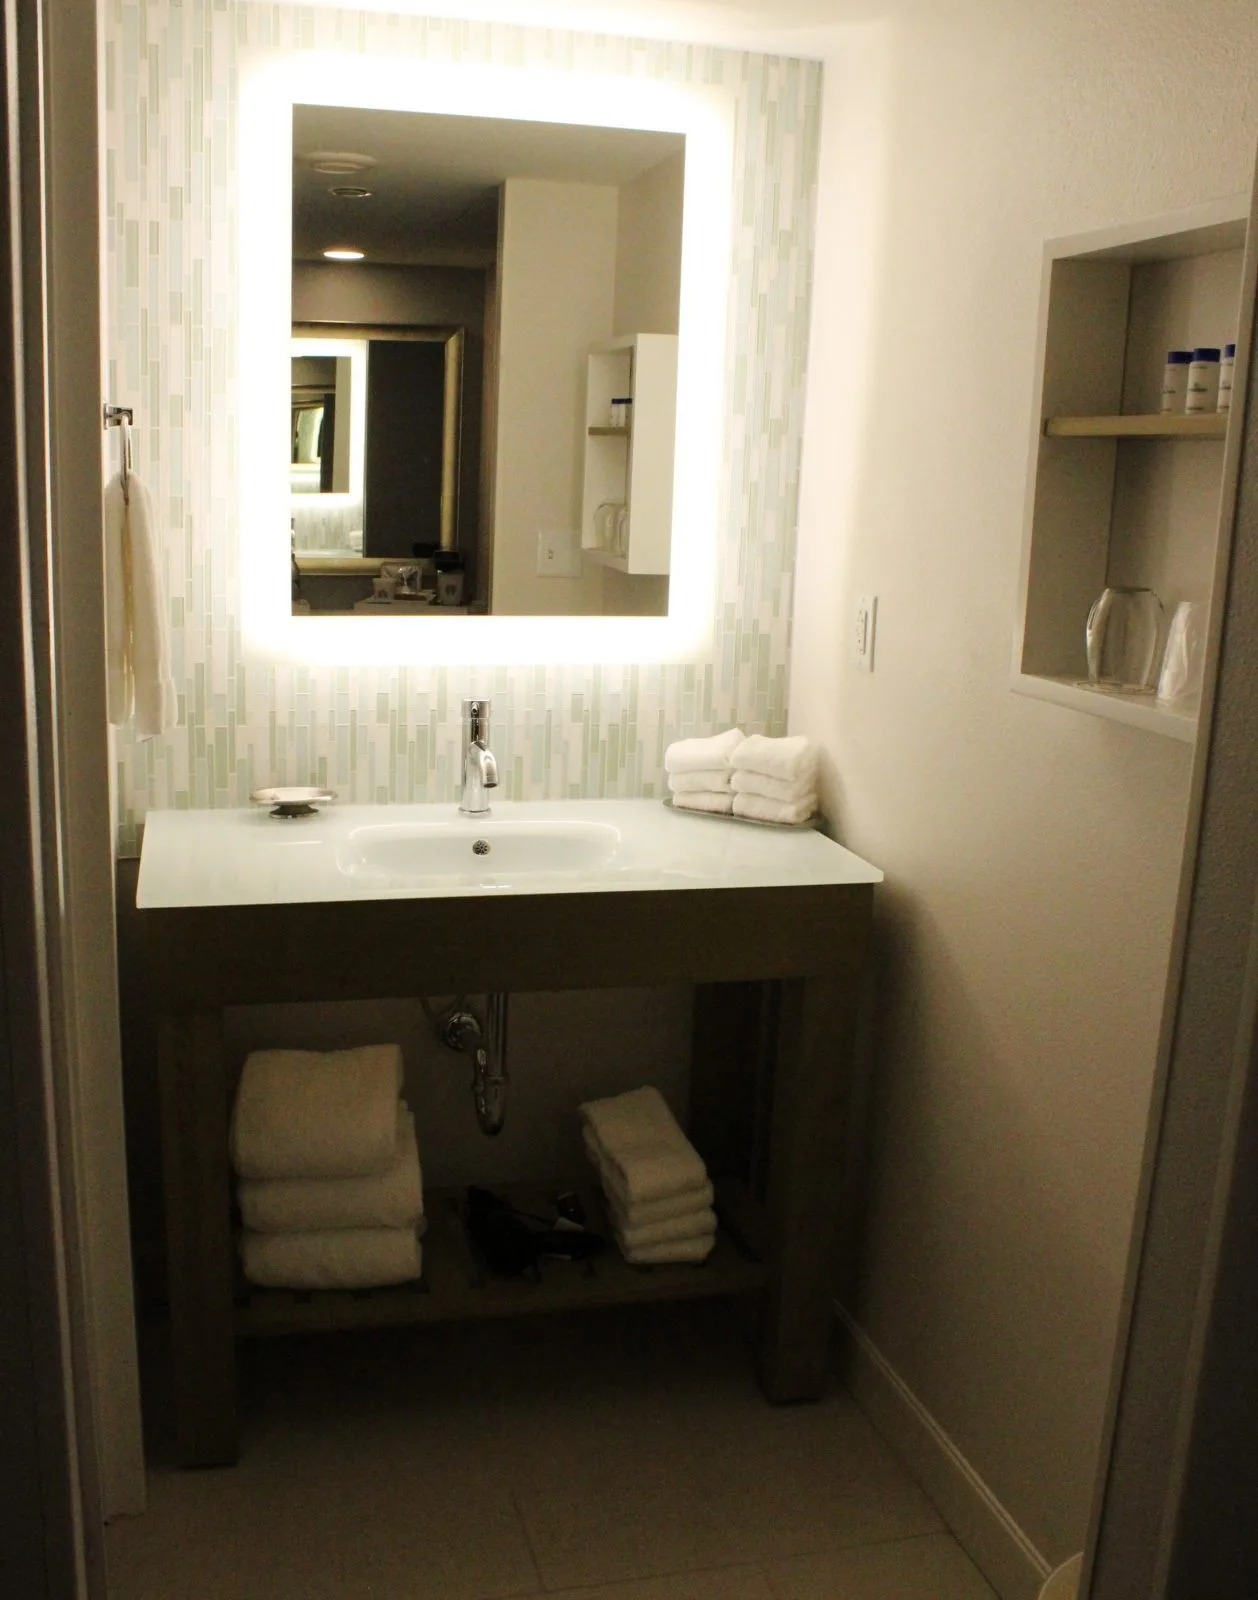 bathroom sink at disney dolphin hotel